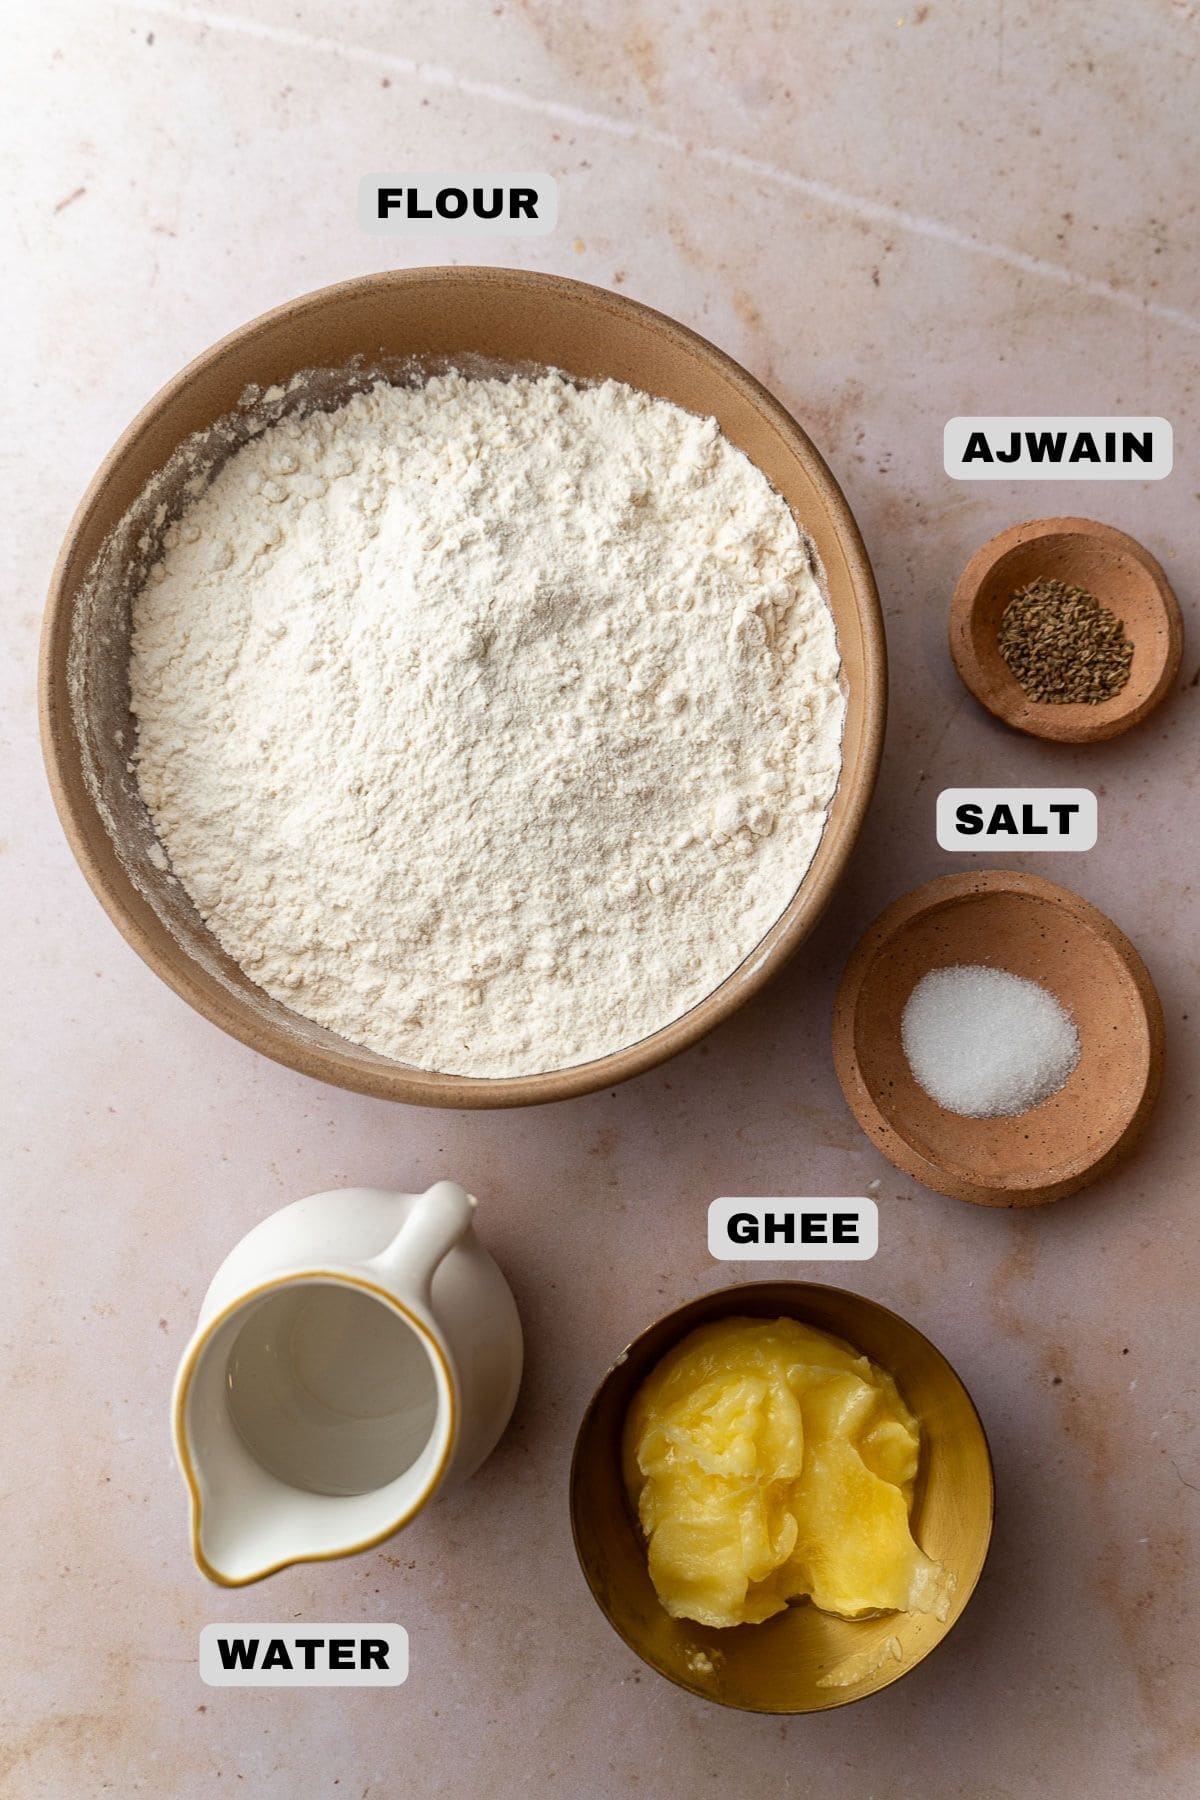 Flour, ajwain, salt, ghee, water ingredients with labels.